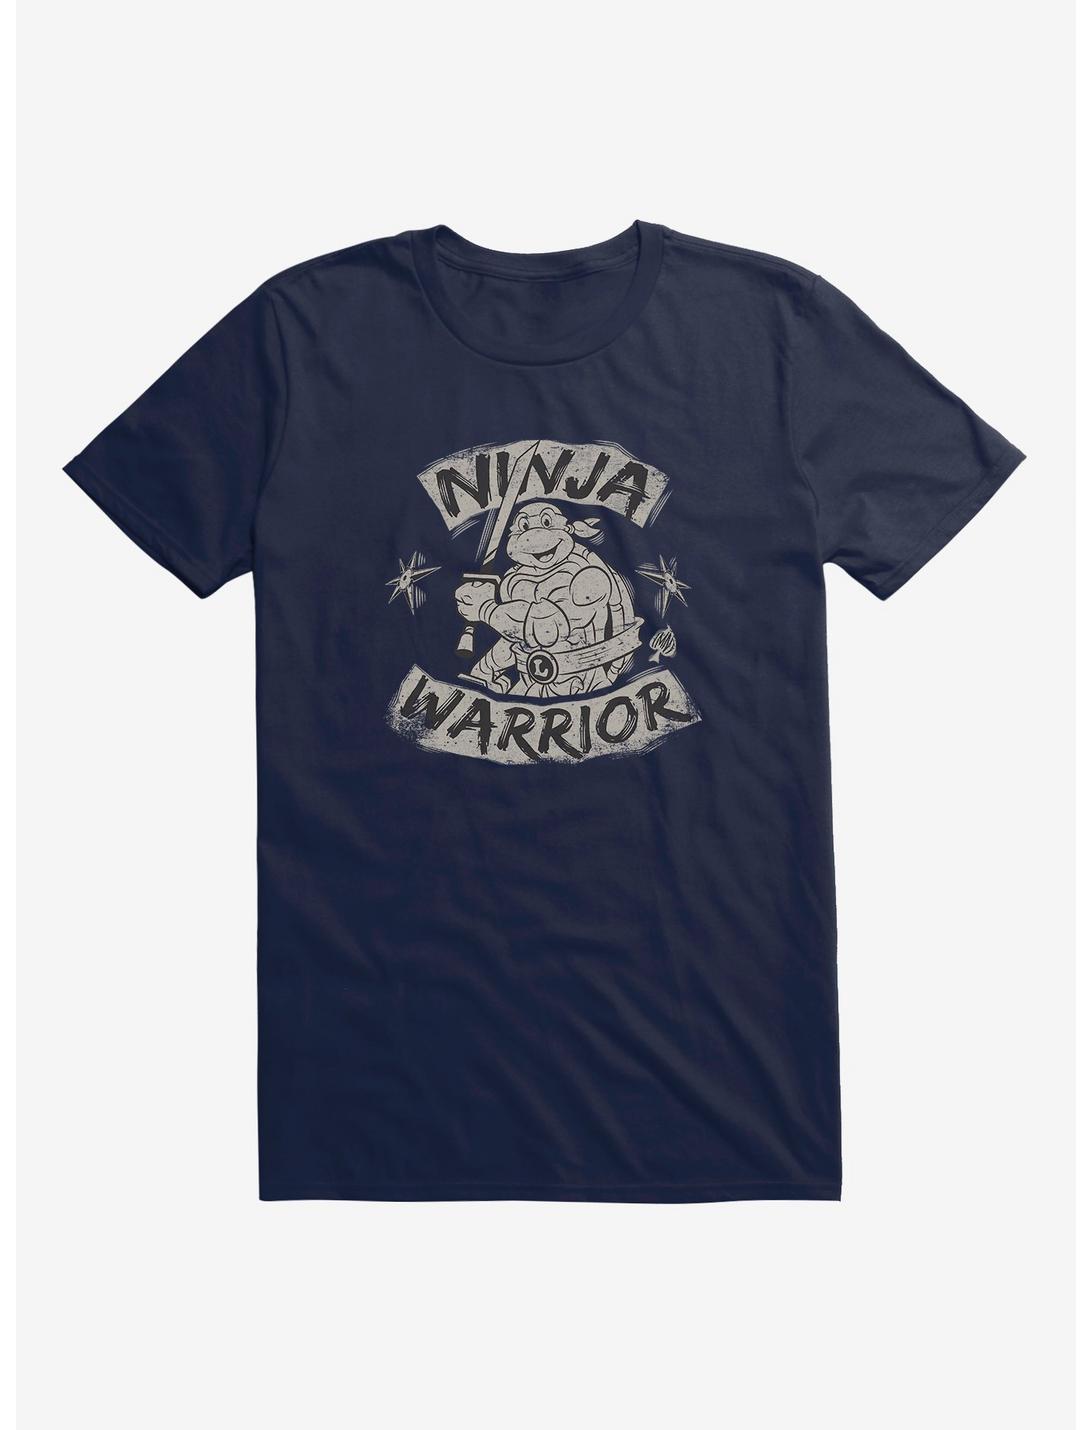 Teenage Mutant Ninja Turtles Leonardo Ninja Warrior T-Shirt, , hi-res